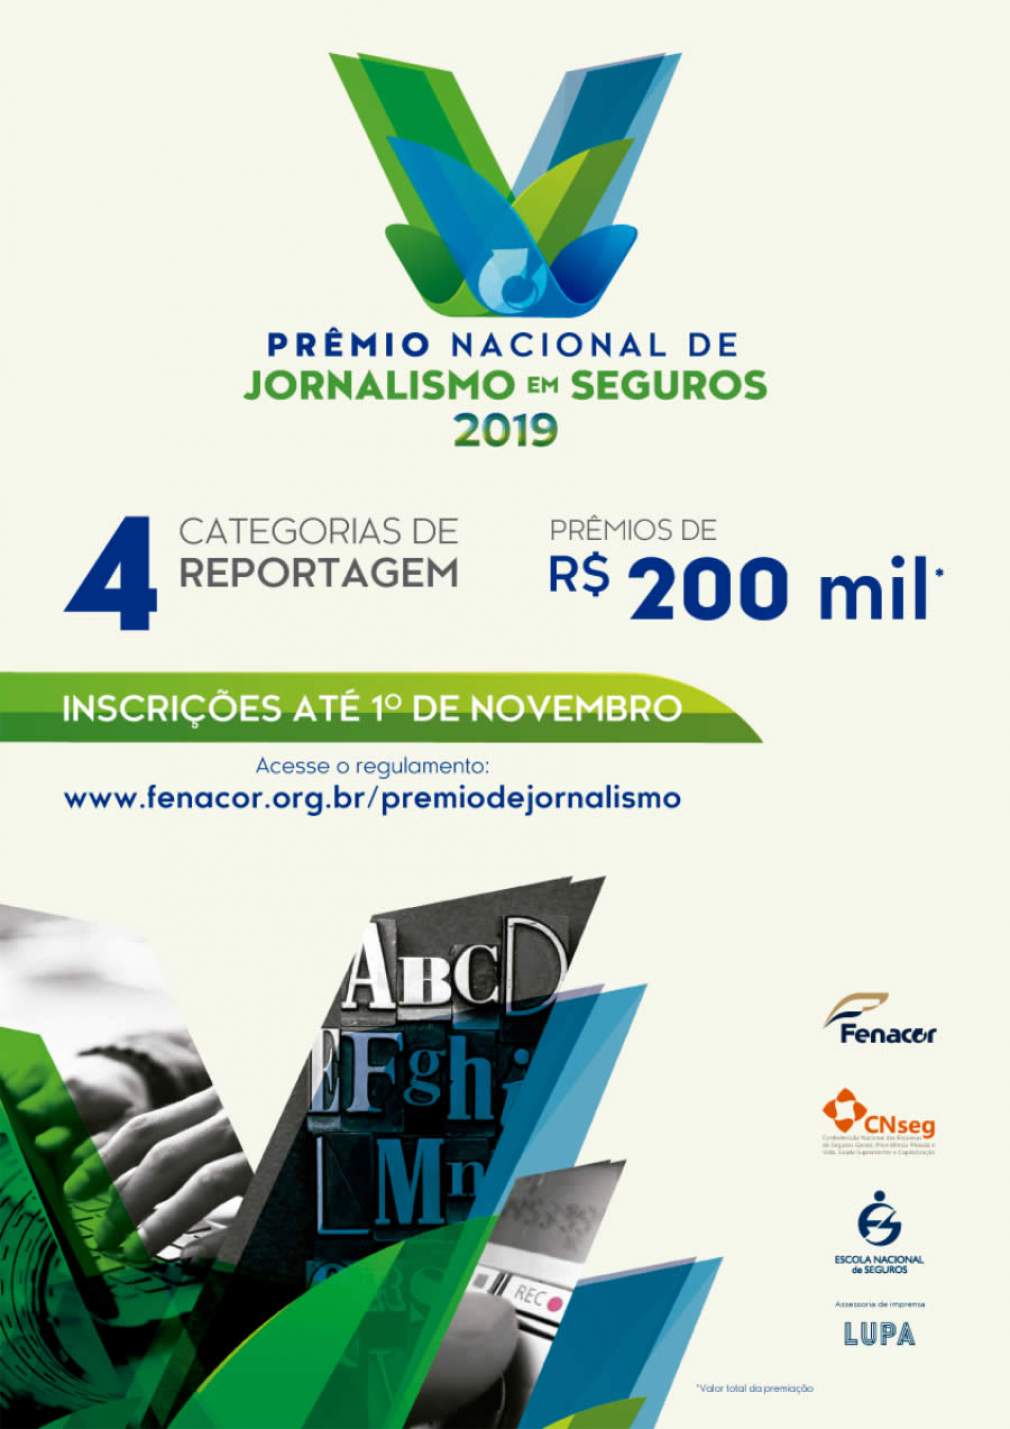 Prêmio Nacional de Jornalismo em Seguros: inscrições terminam nesta sexta